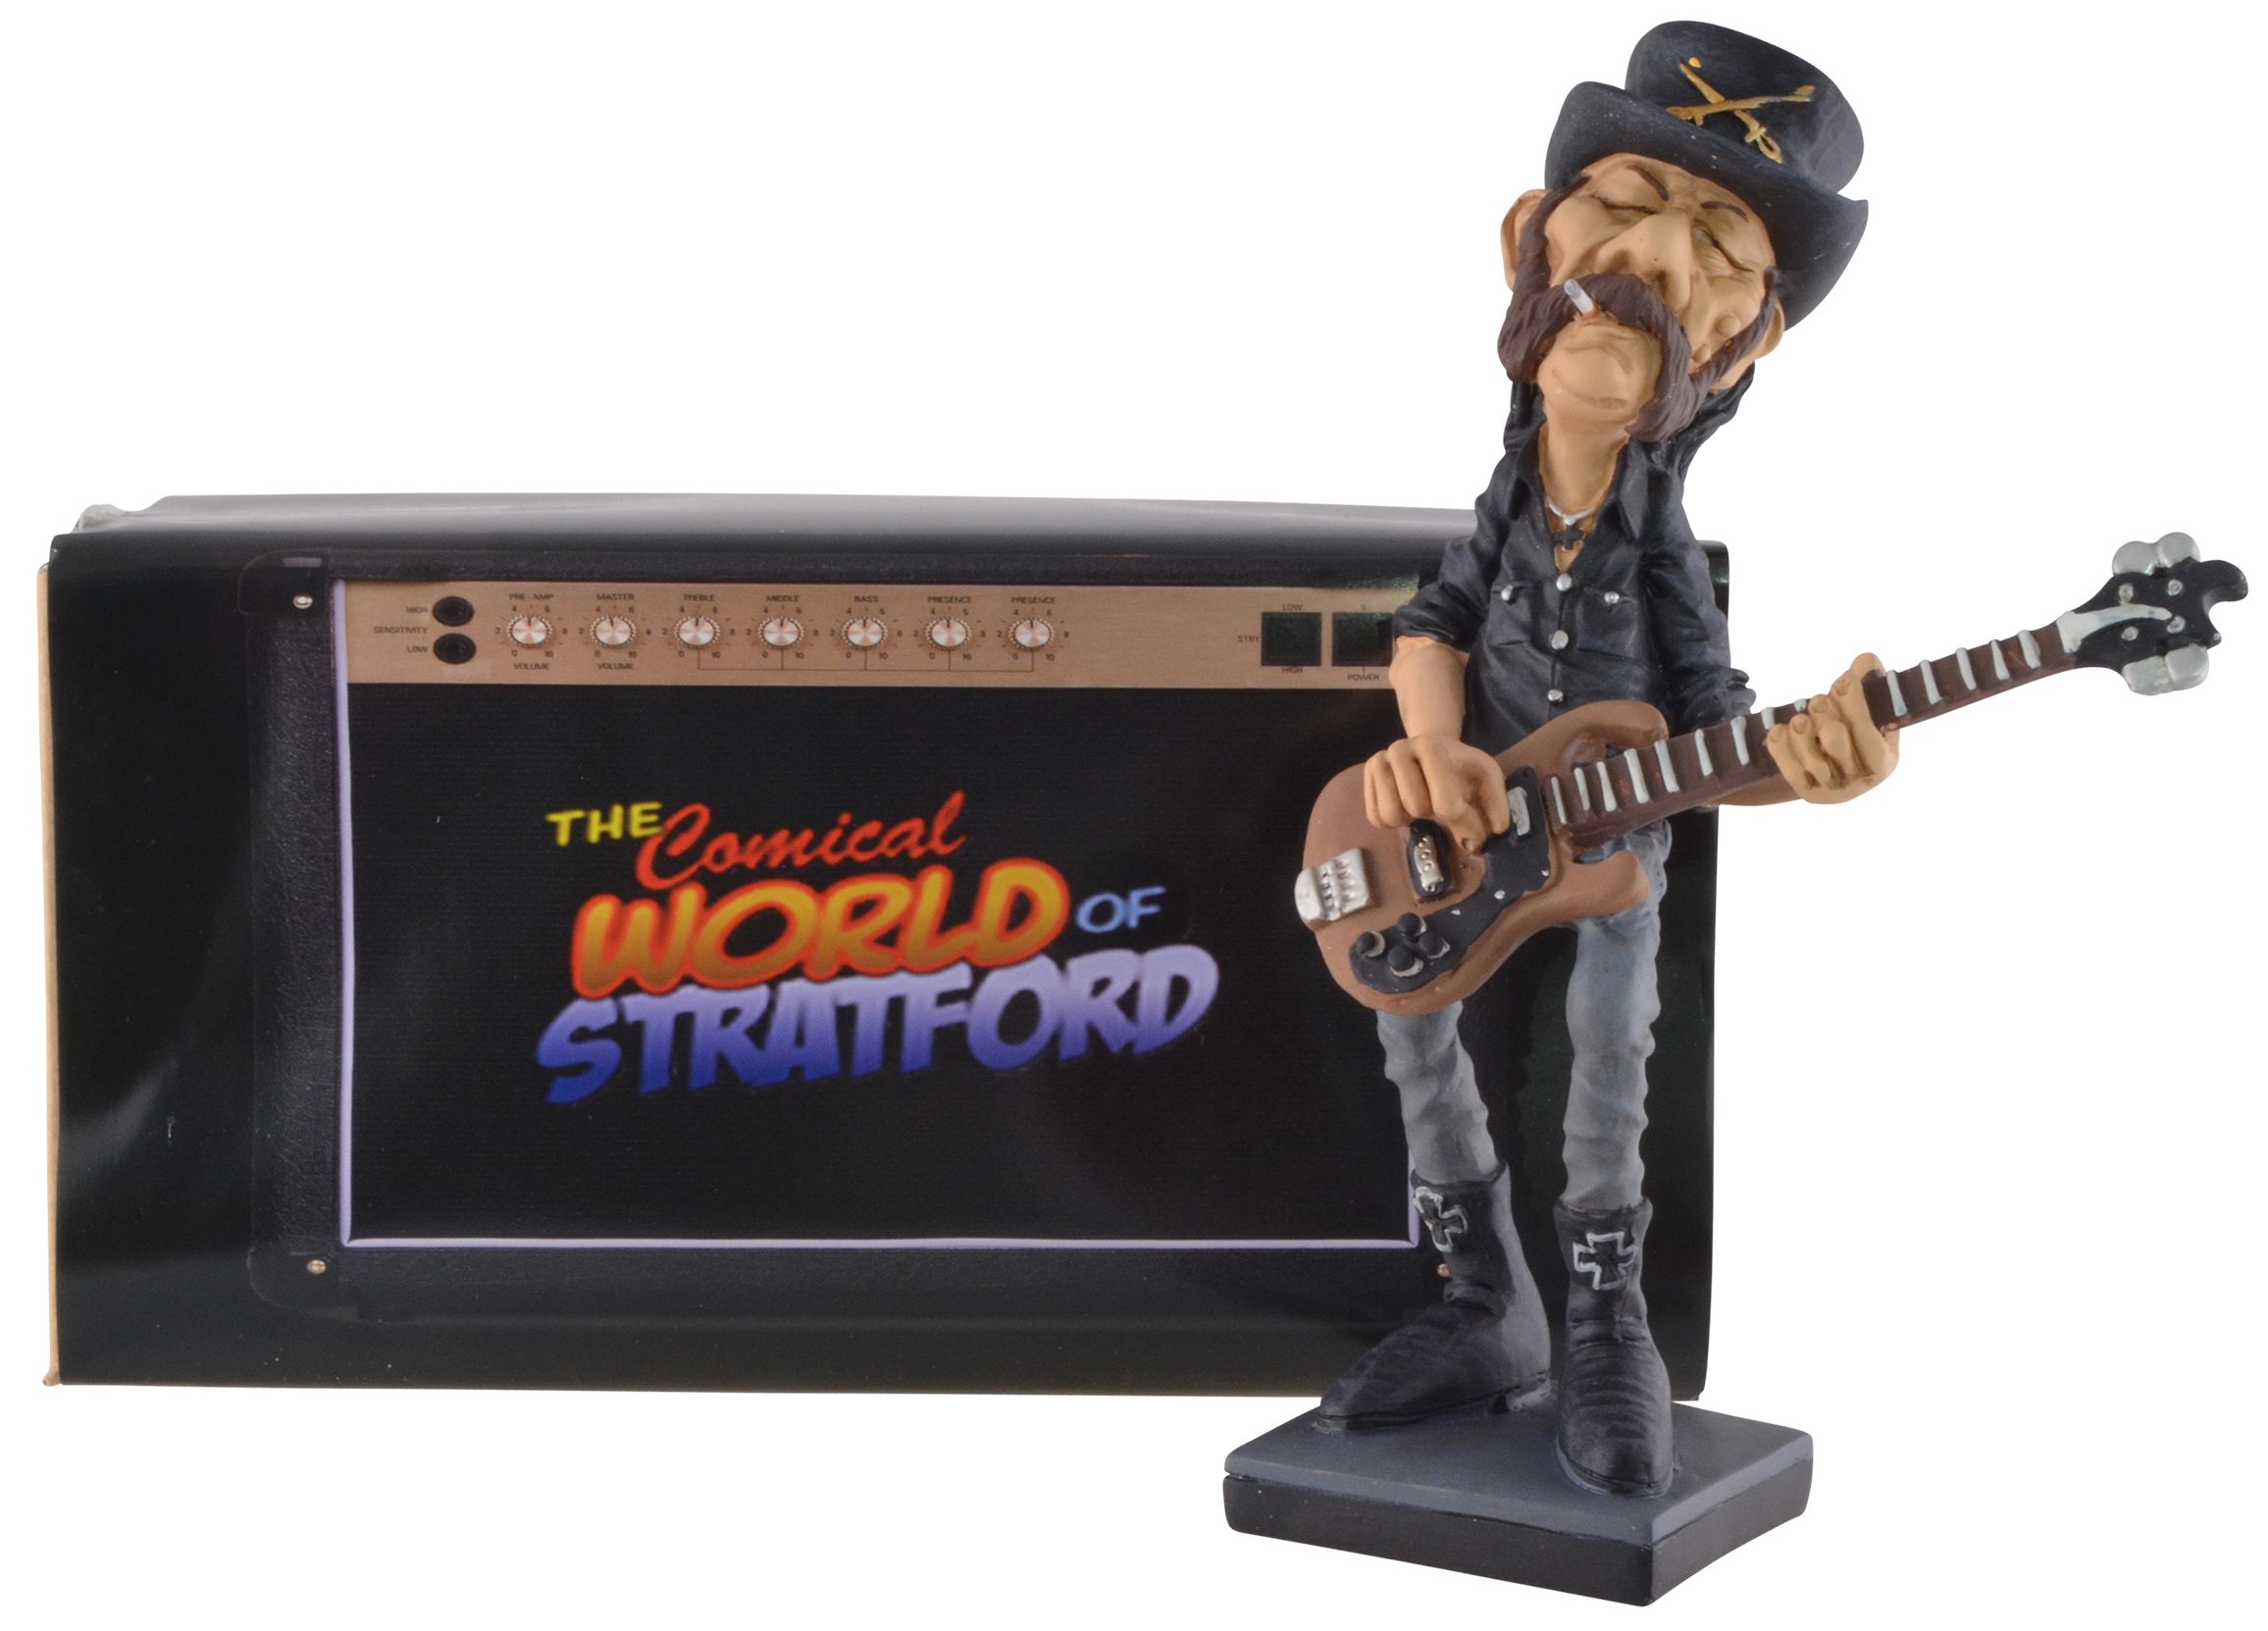 Vogler direct Gmbh Dekofigur Rockstar Lemmy bemalt, LxBxH: der Band lautesten Hand der Stratford, 12x9x20cm von Warren von Welt